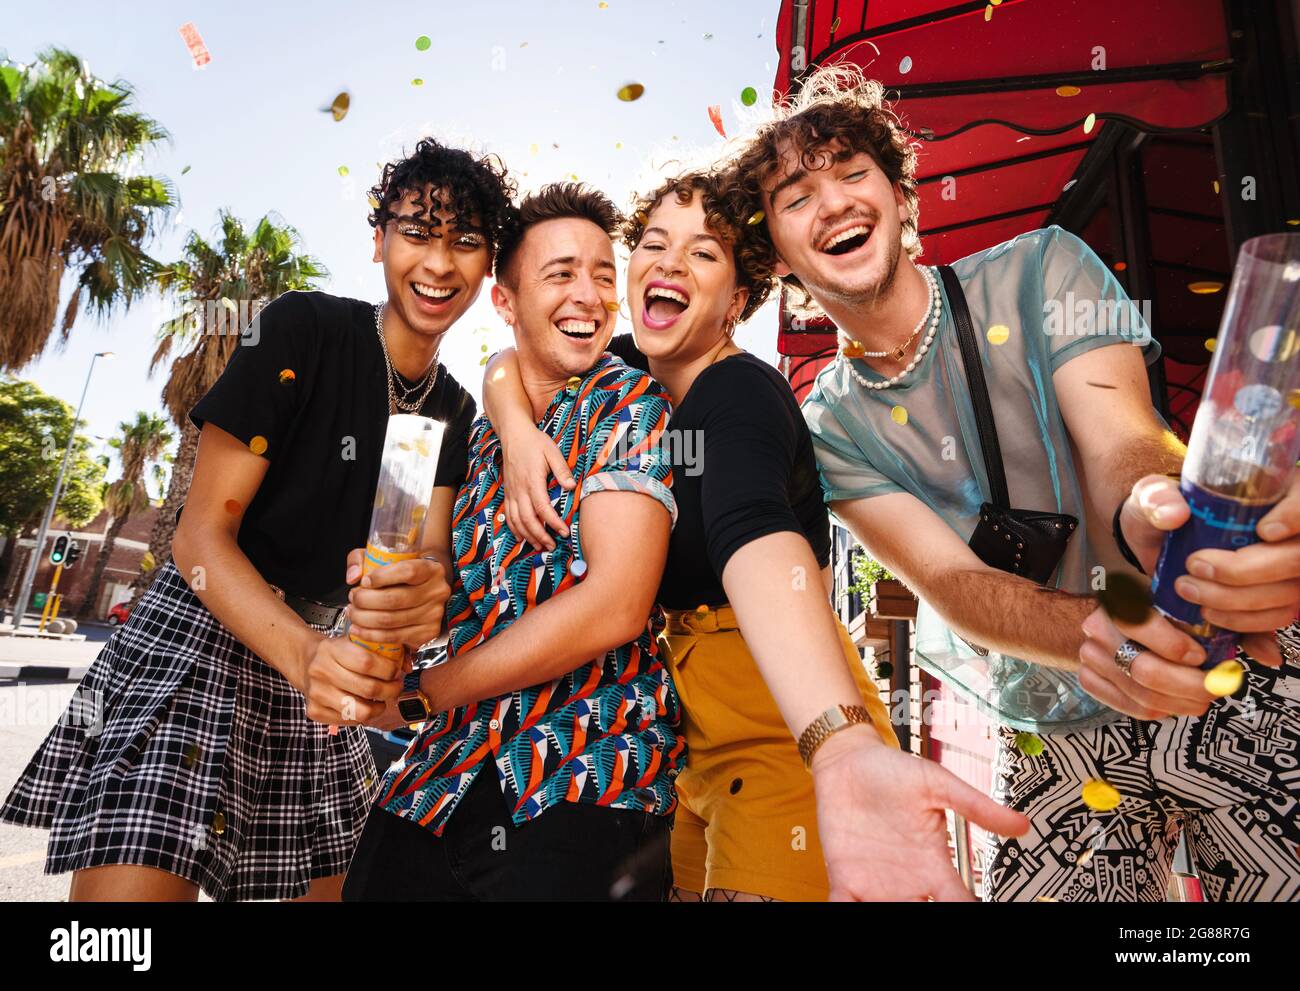 Quatre amis fêtant avec des confettis en plein air. Groupe de personnes queer heureux souriant joyeusement tout en célébrant leur amitié. Amis liant un Banque D'Images